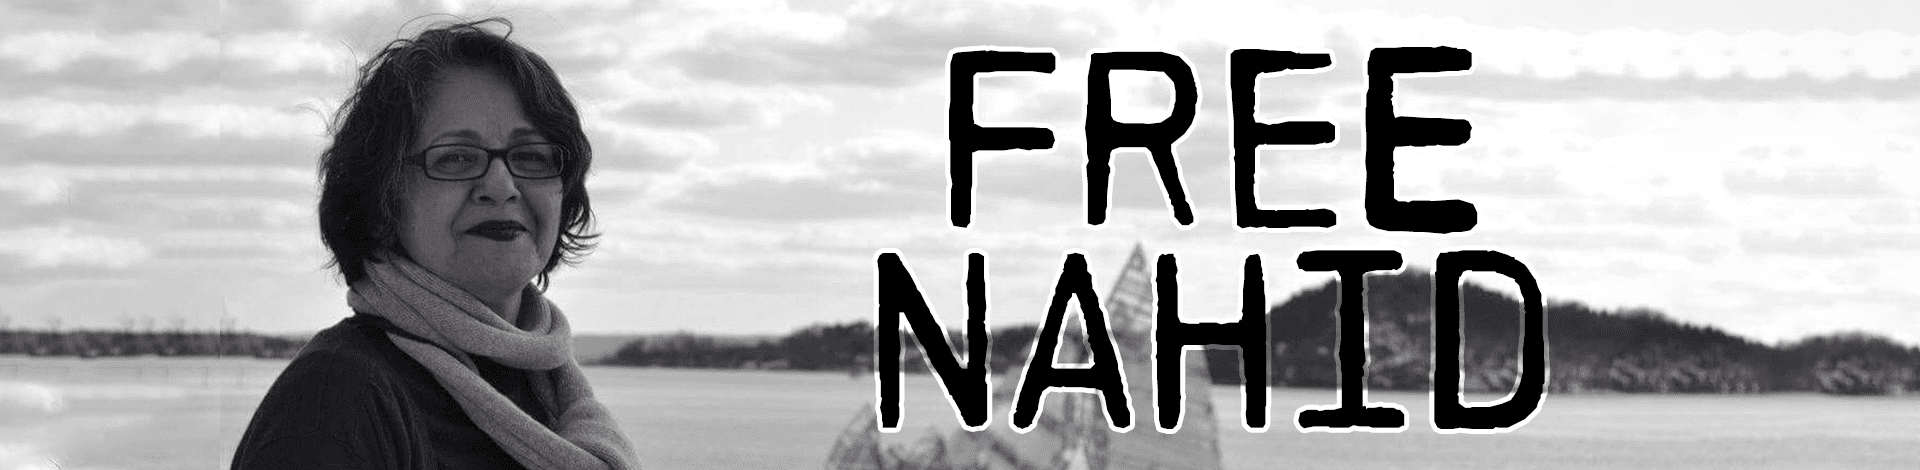 Free-Nahid-Taghavi